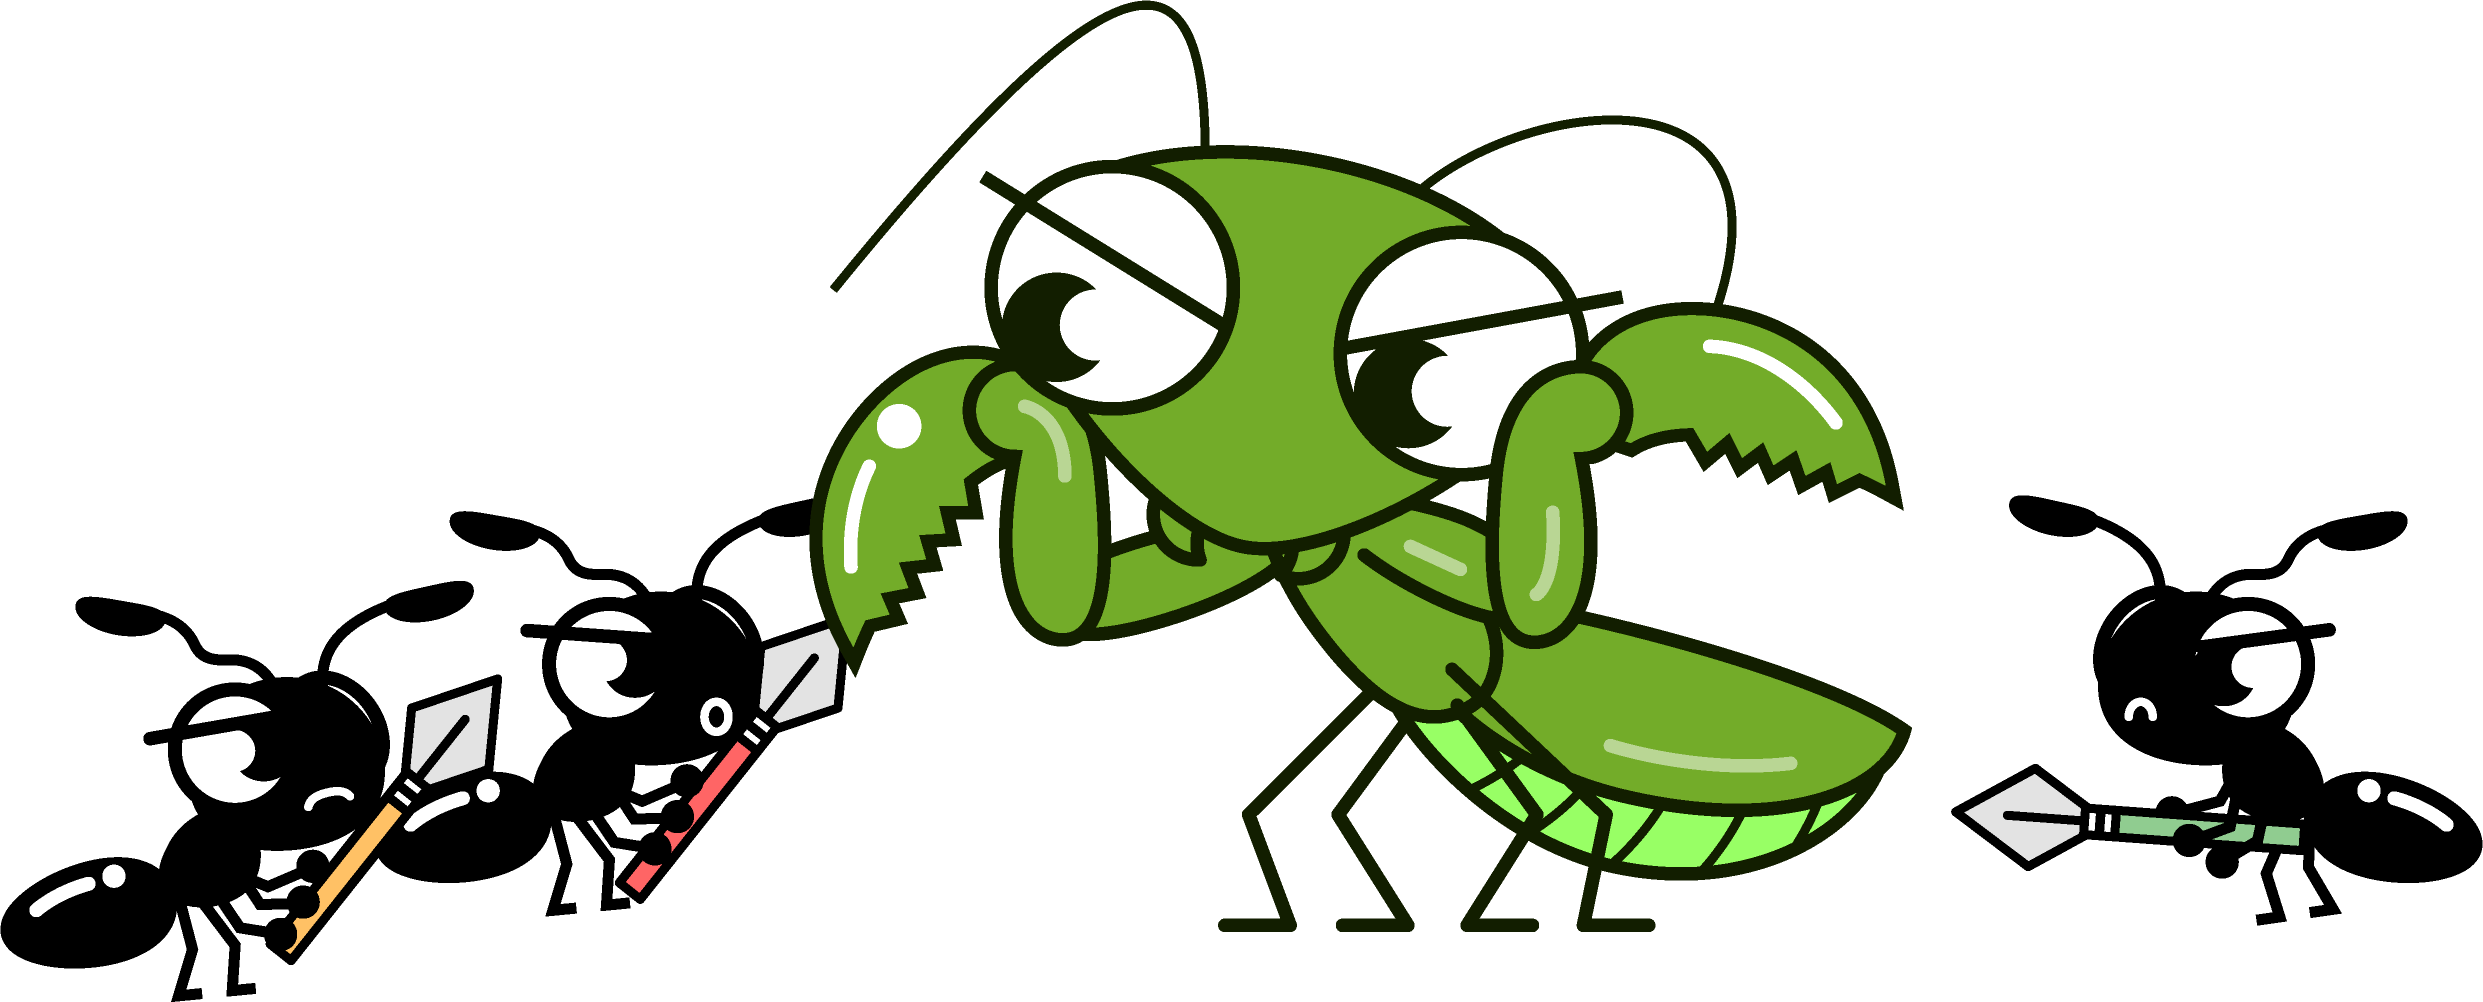 カマキリと戦う蟻イラスト 昆虫 素材のプチッチ